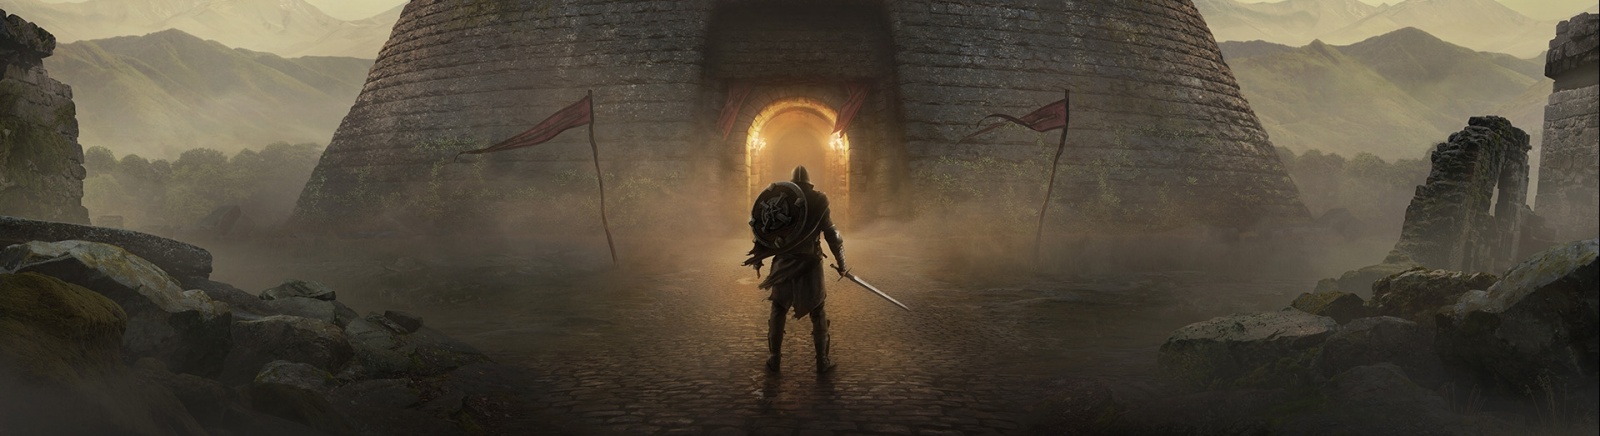 Дата выхода The Elder Scrolls: Blades (TES: Blades)  на Nintendo Switch, iOS и Android в России и во всем мире